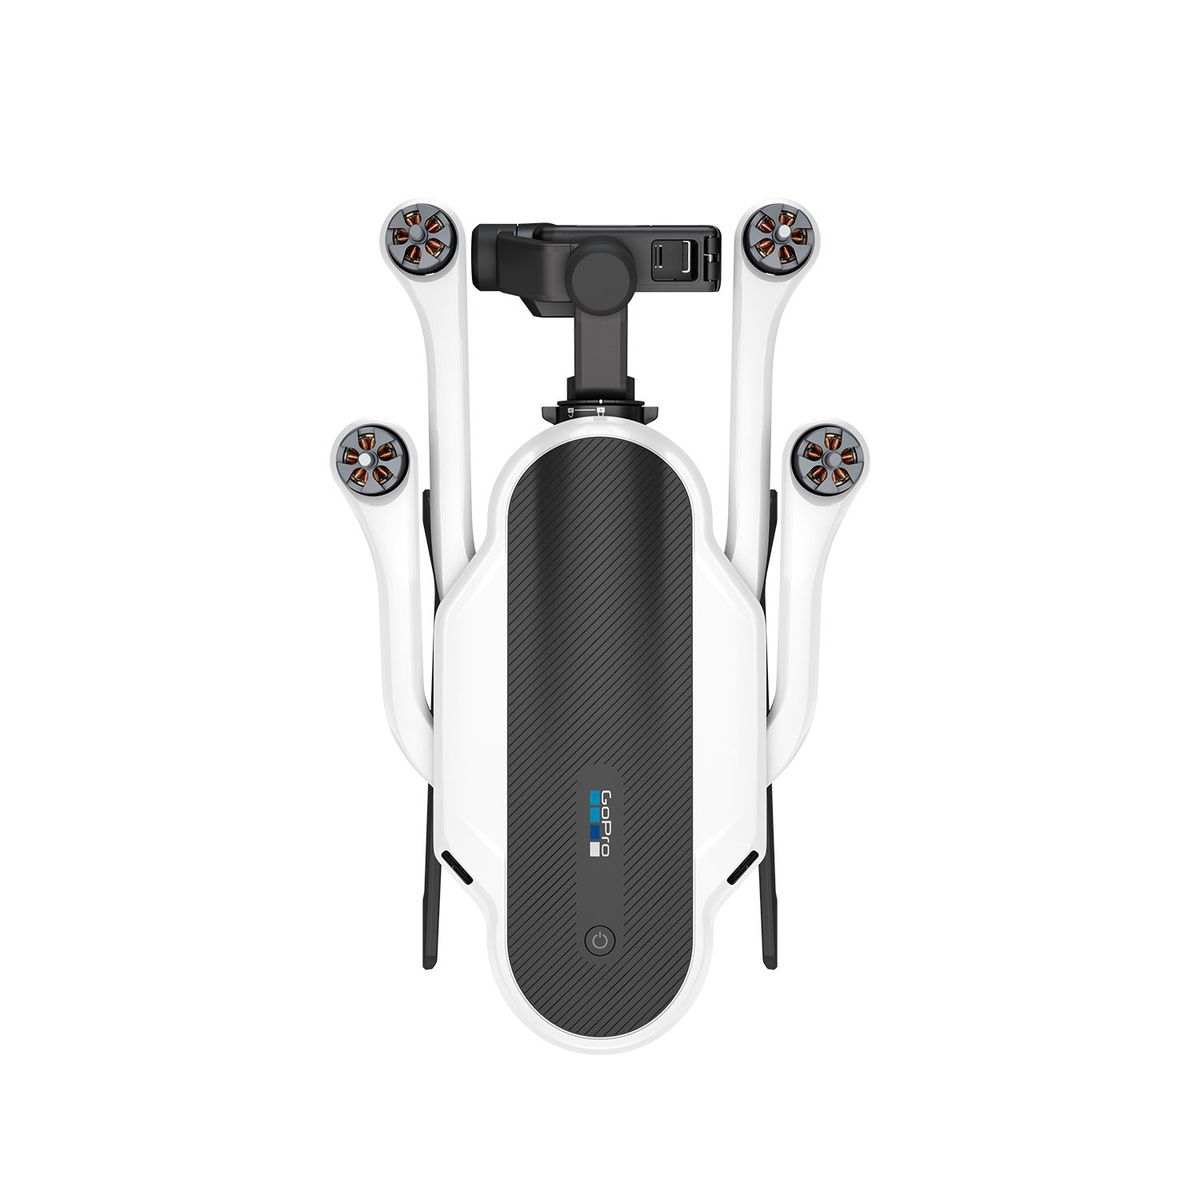 Karma GoPro drone